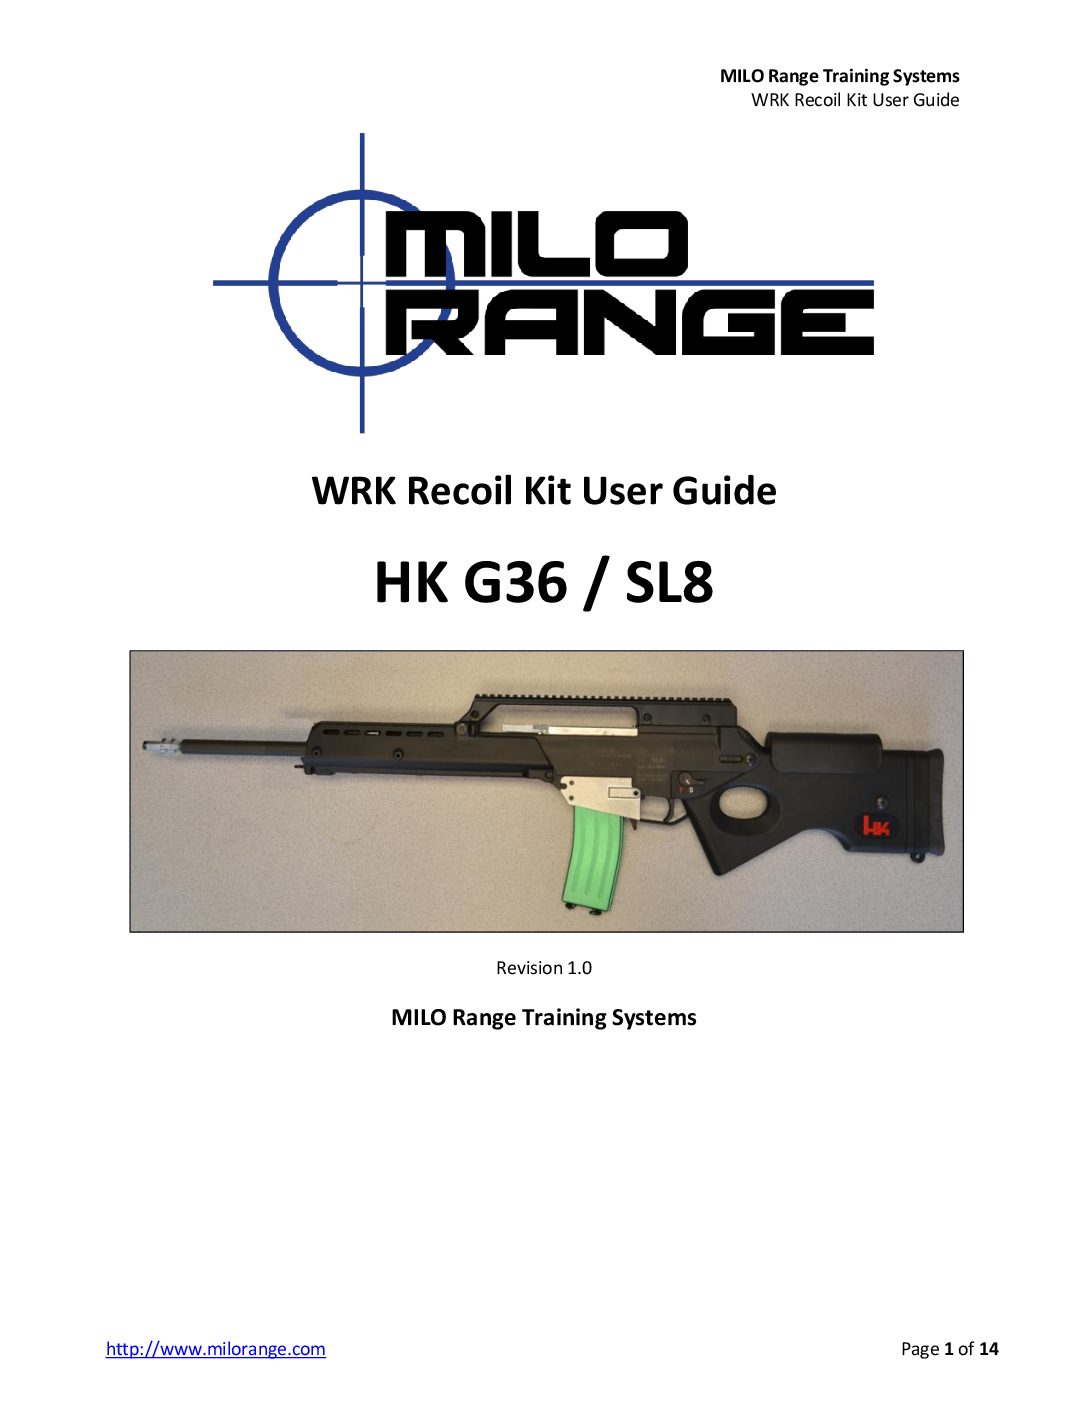 MILO Range Training Systems HK G36 -SL8 WRK Recoil Kit User Guide